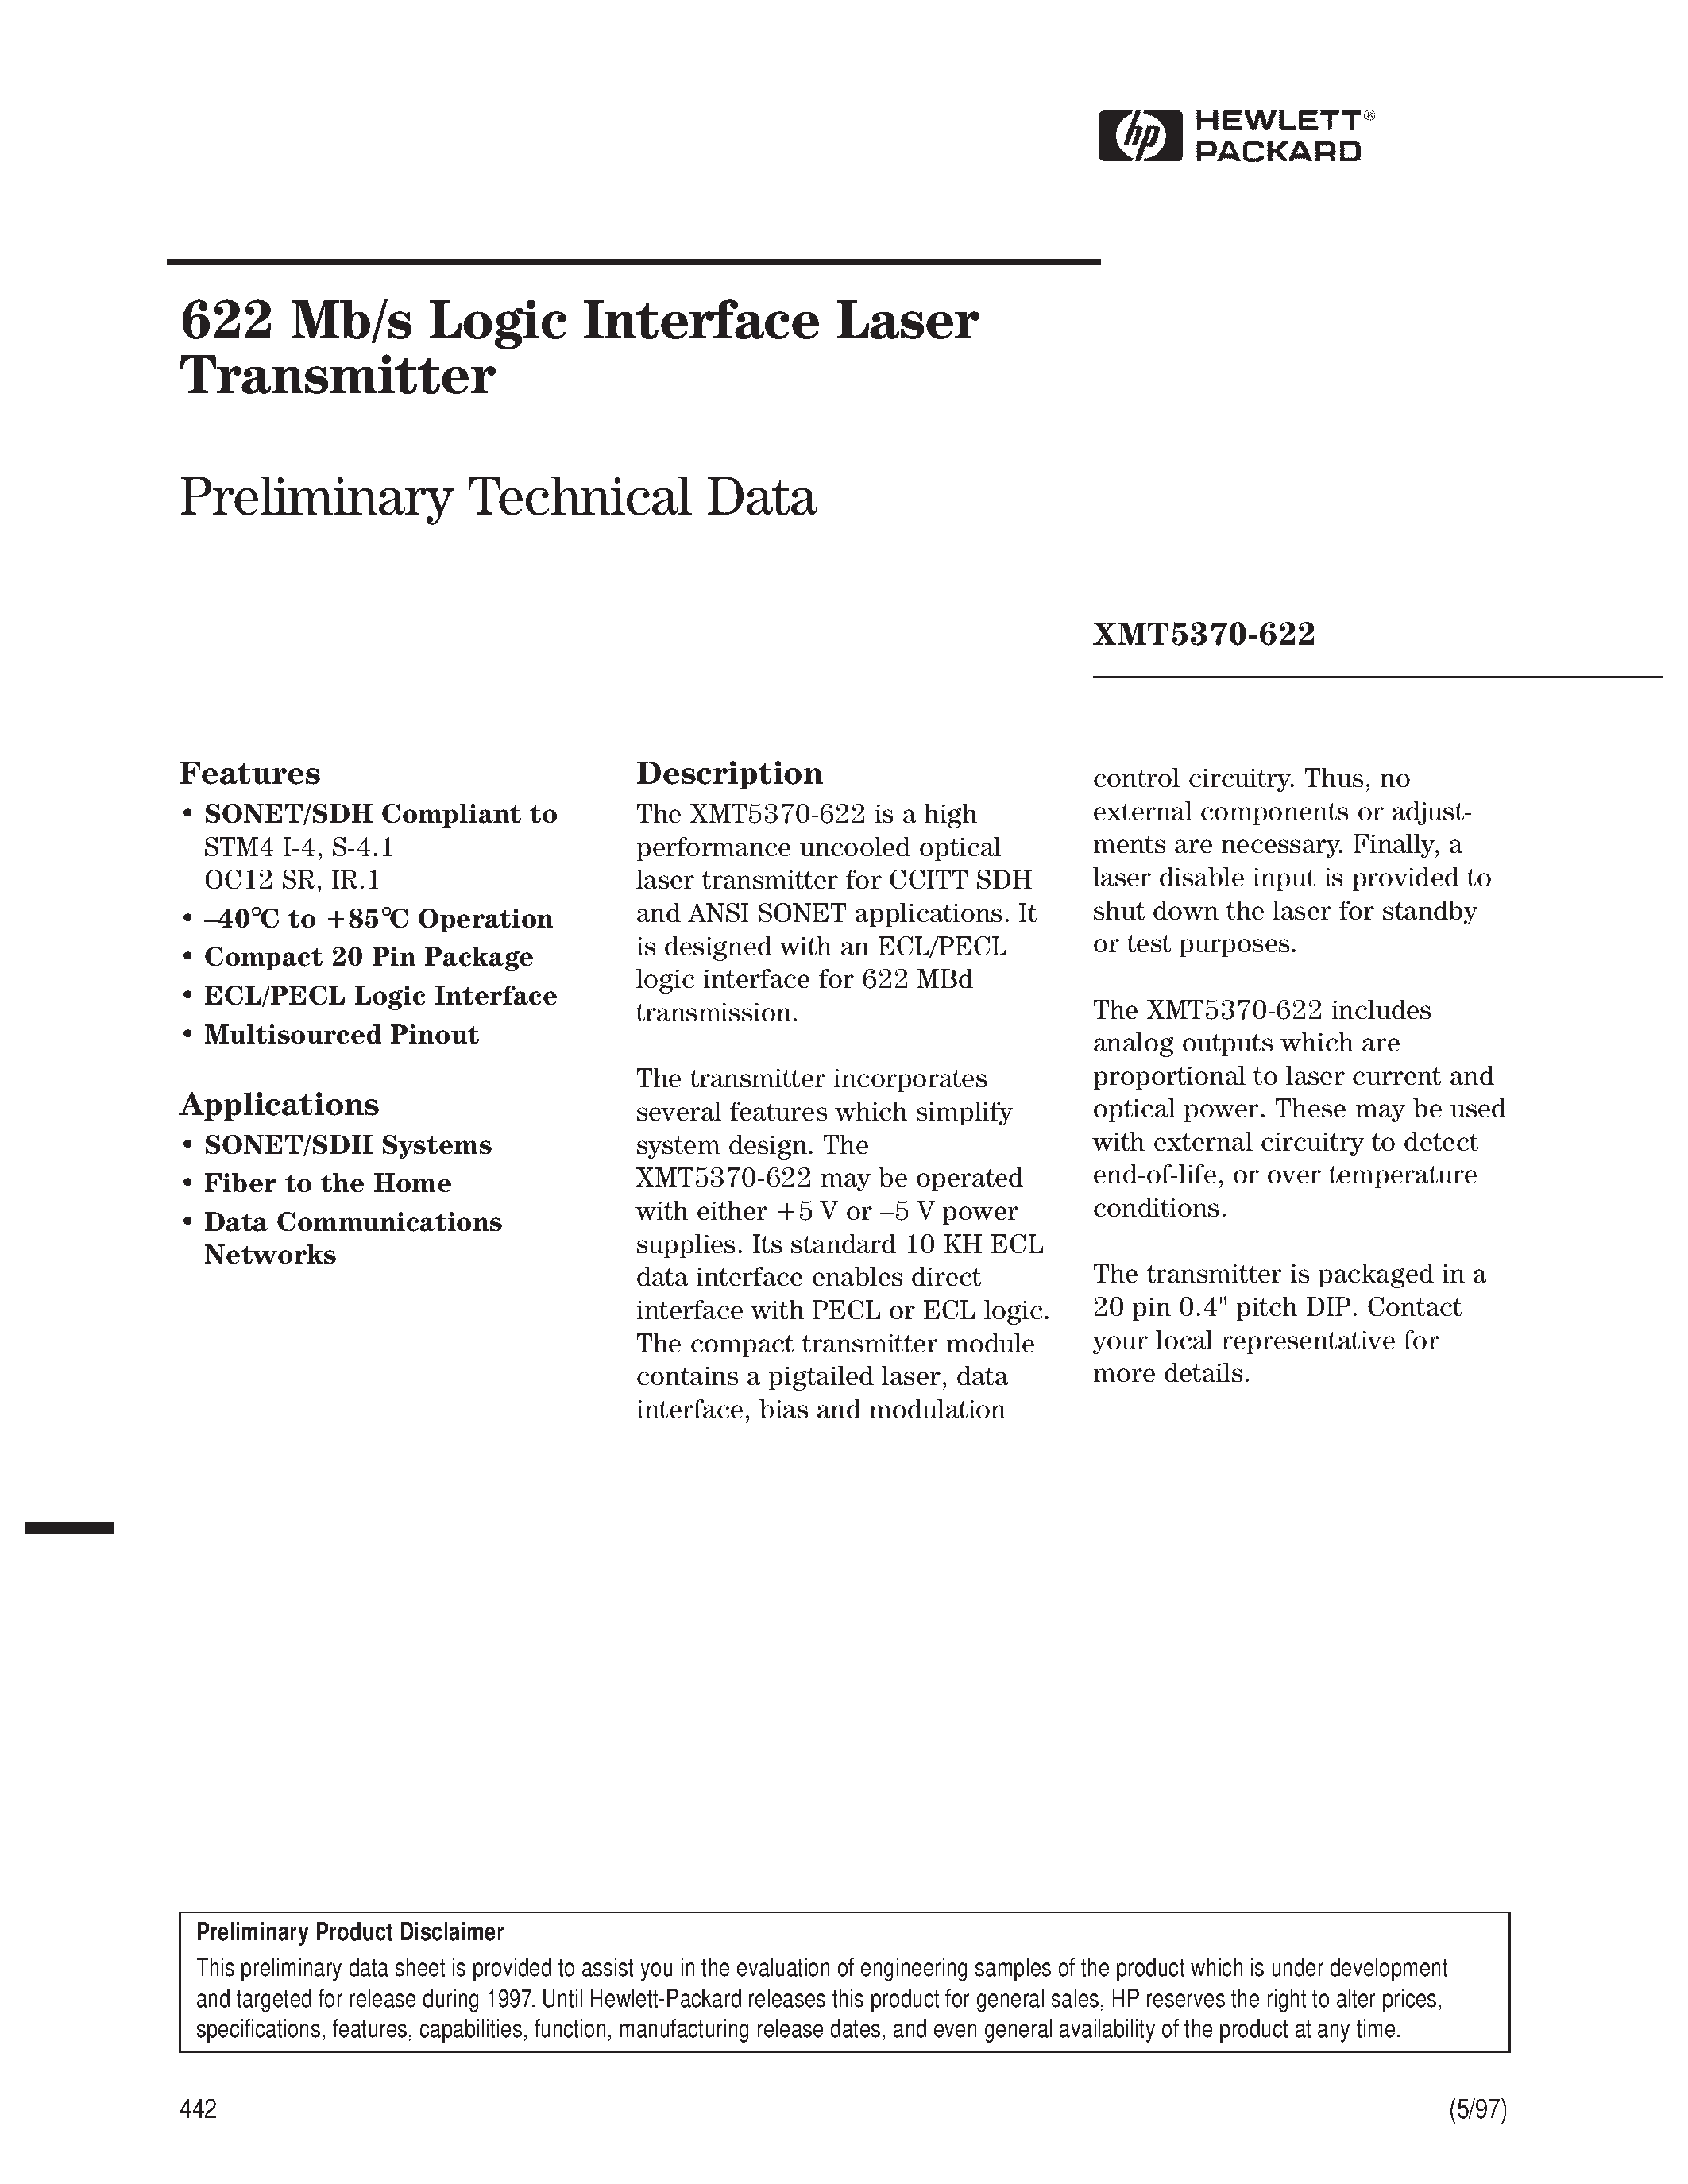 Datasheet XMT5160A-155-FP - 622 Mb/s Logic Interface Laser Transmitter page 1